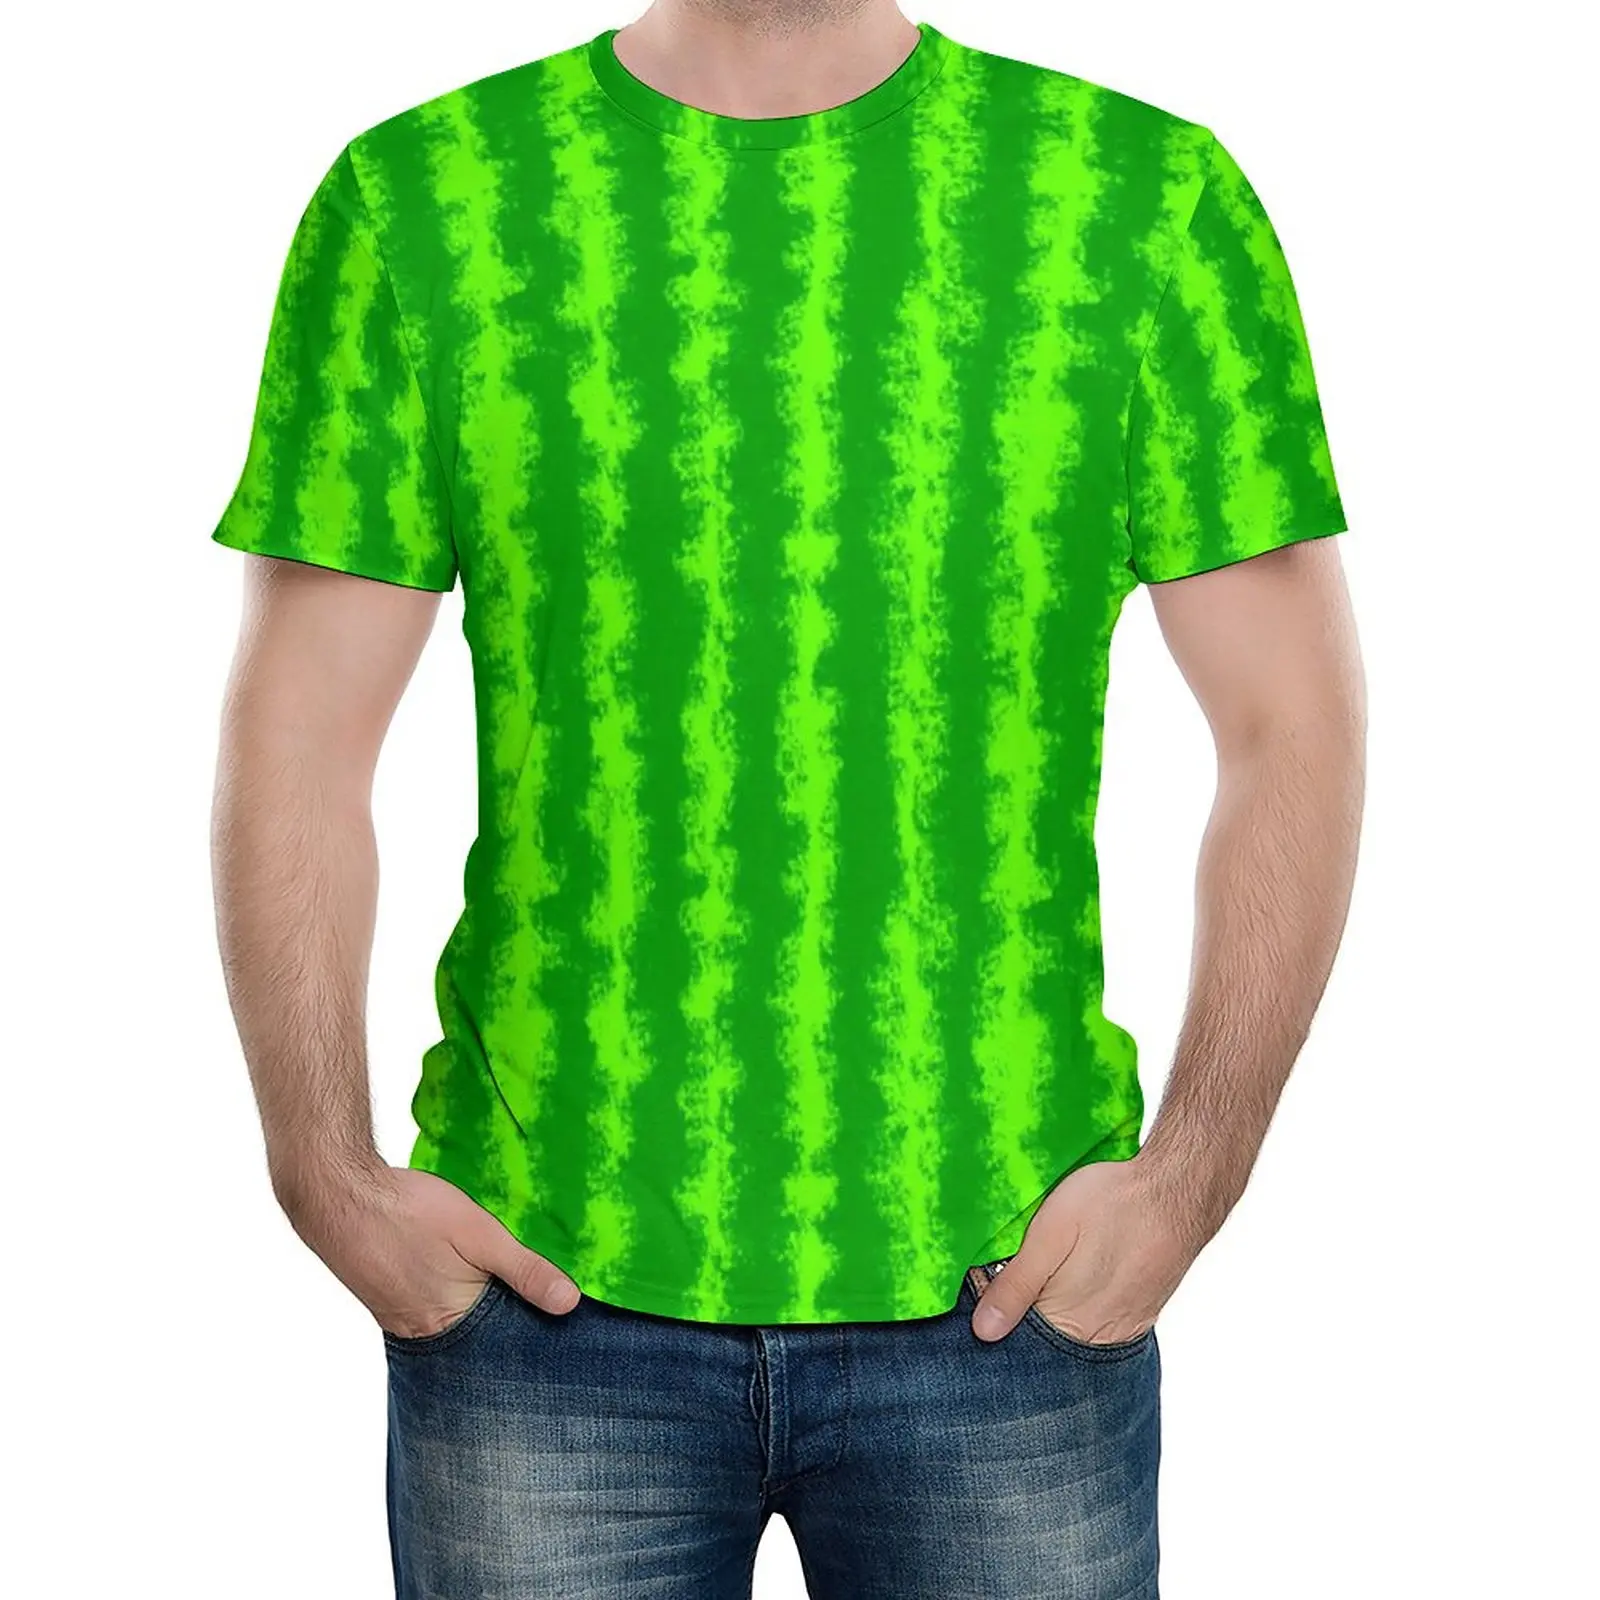 

Green Striped T Shirt Men Watermelon Print Kawaii T Shirts Summer Vintage Tee Shirt Short-Sleeve Graphic Oversize Tops